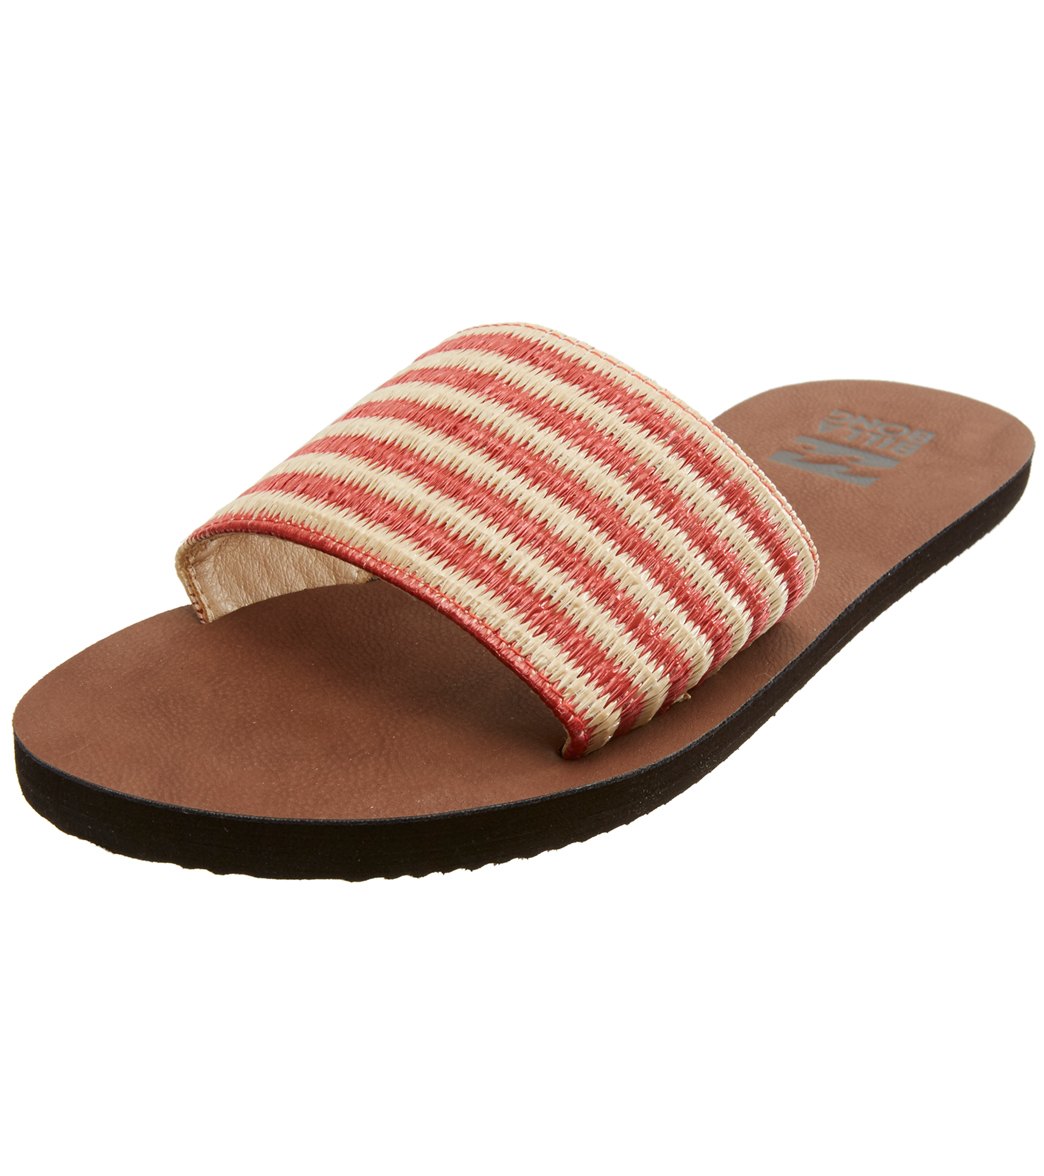 Billabong Women's Horizon Slides Sandals - Vintage Coral 7 - Swimoutlet.com